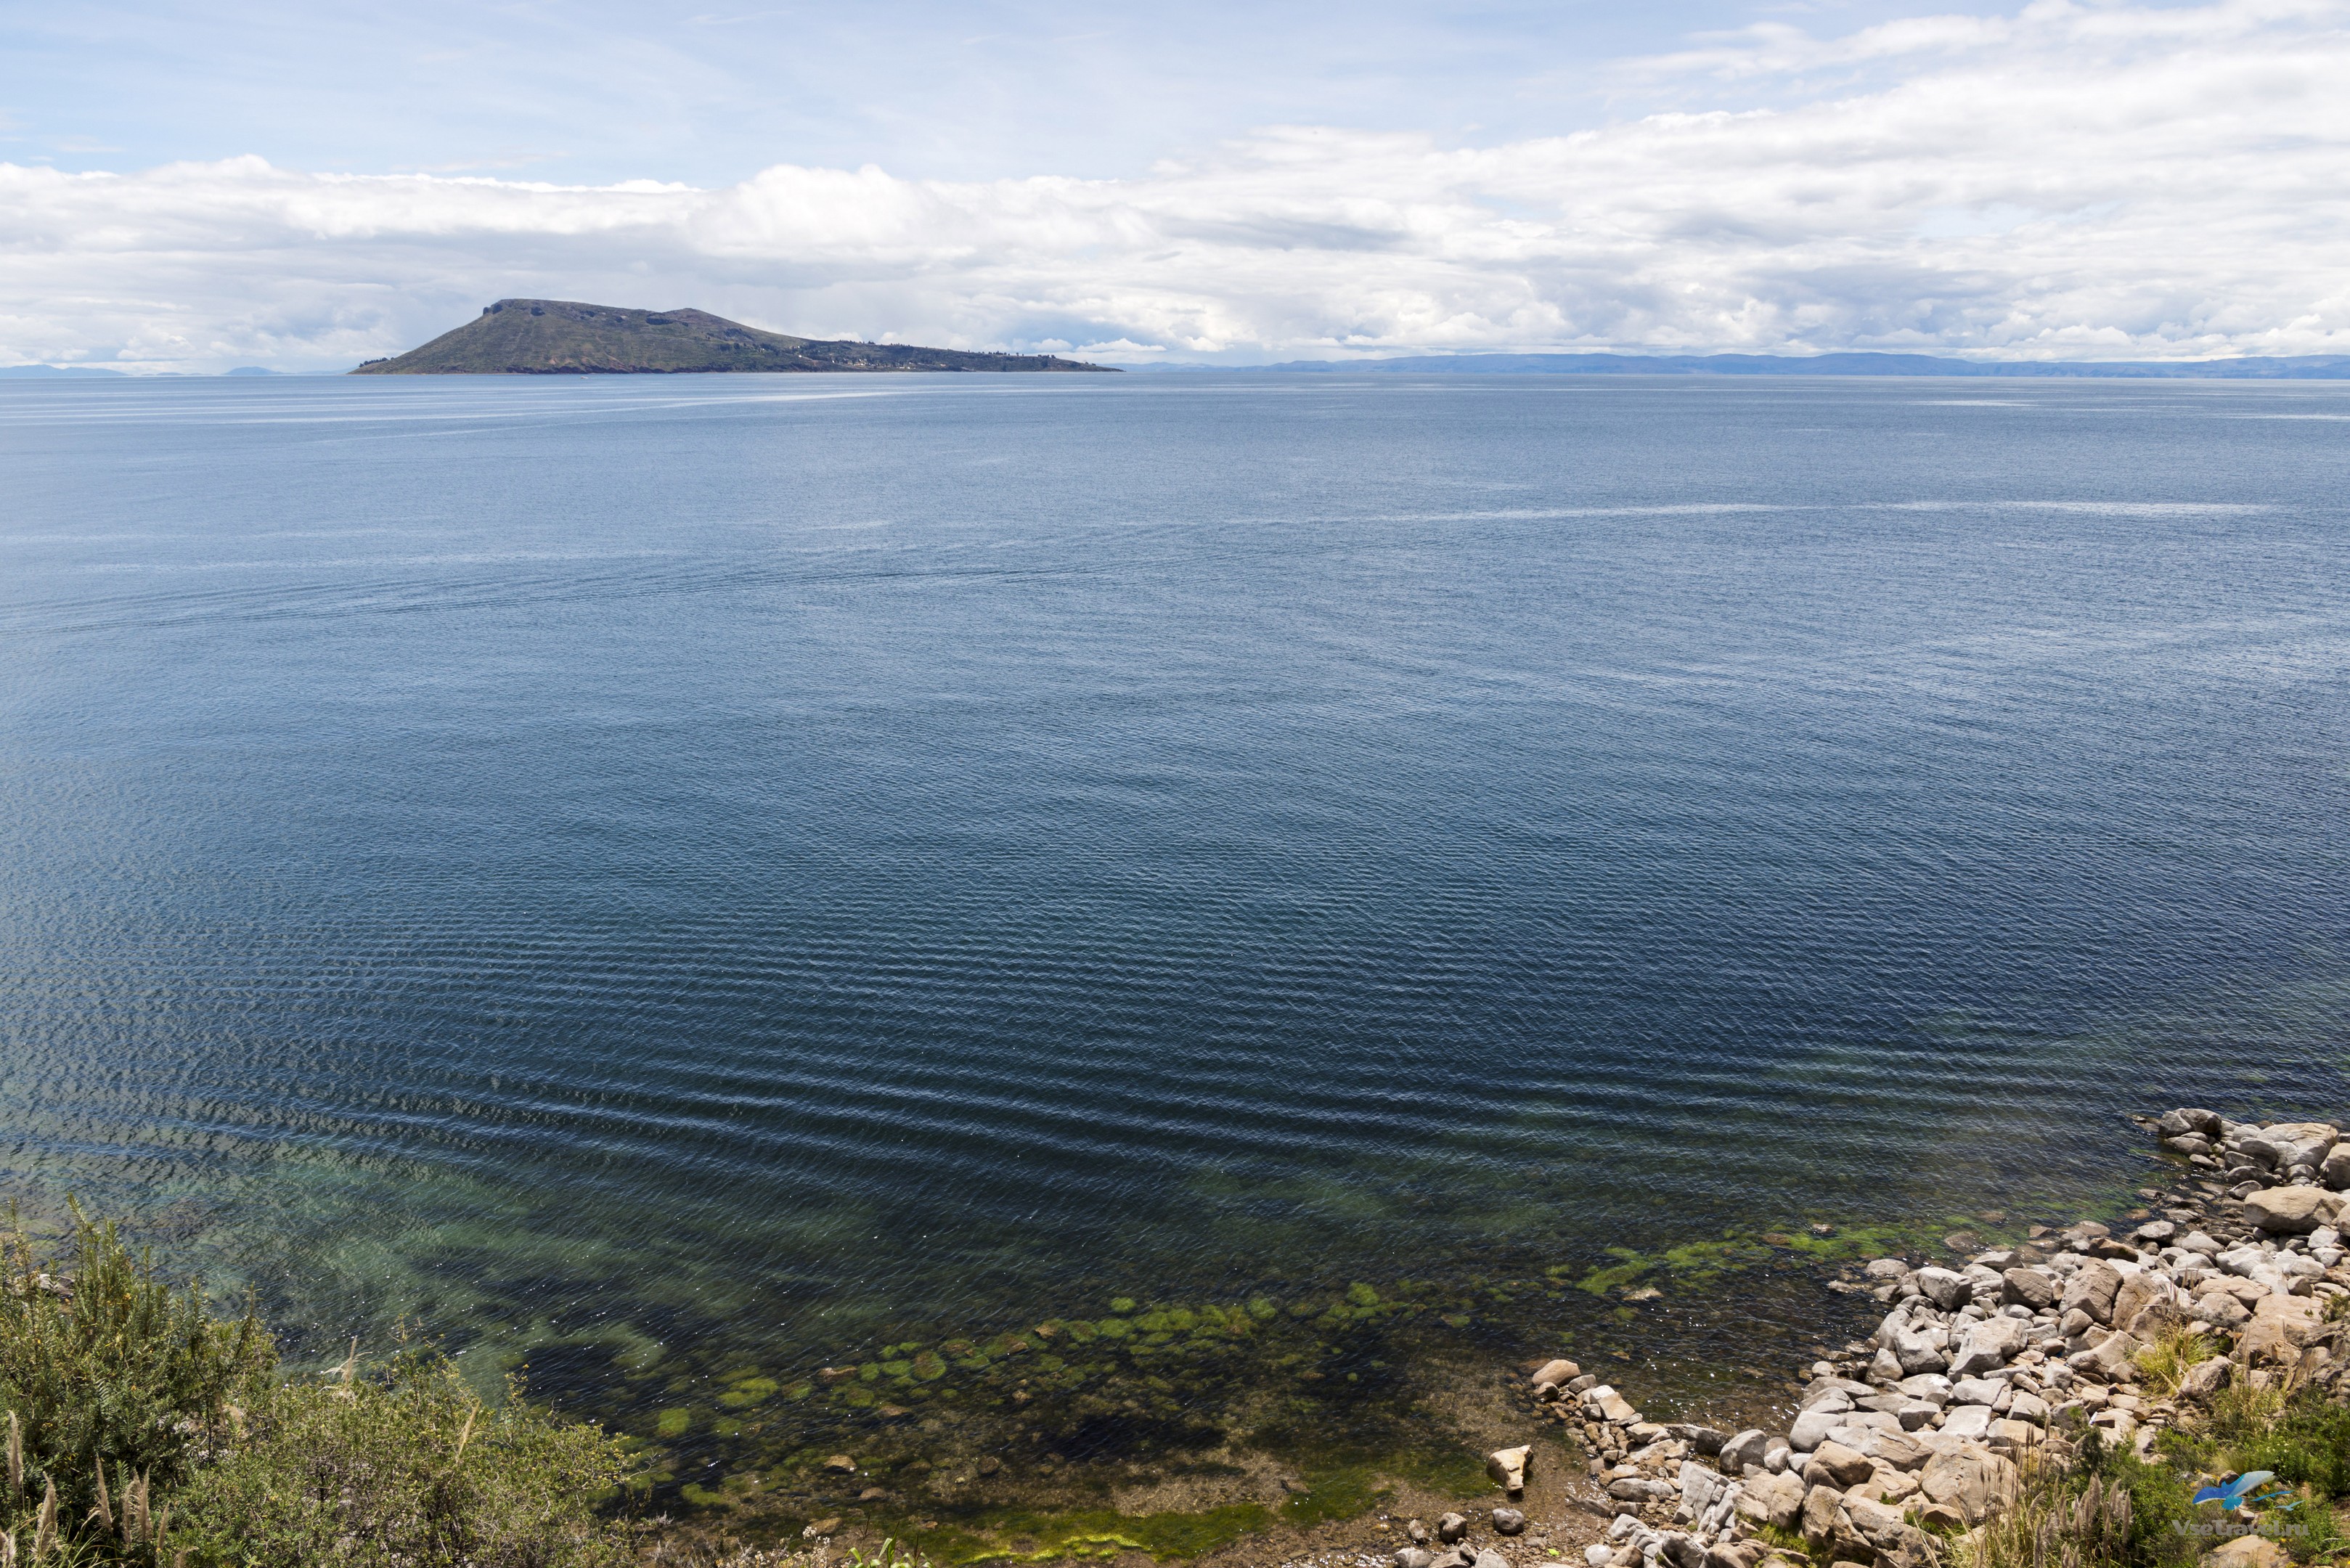 Пресноводное озеро в латинской америке самое большое. Тростниковые острова в озере Титикака. Озеро Титикака Перу. Озеро Титикака остров солнца. Таинственное высокогорное пресноводное озеро Южной Америки.